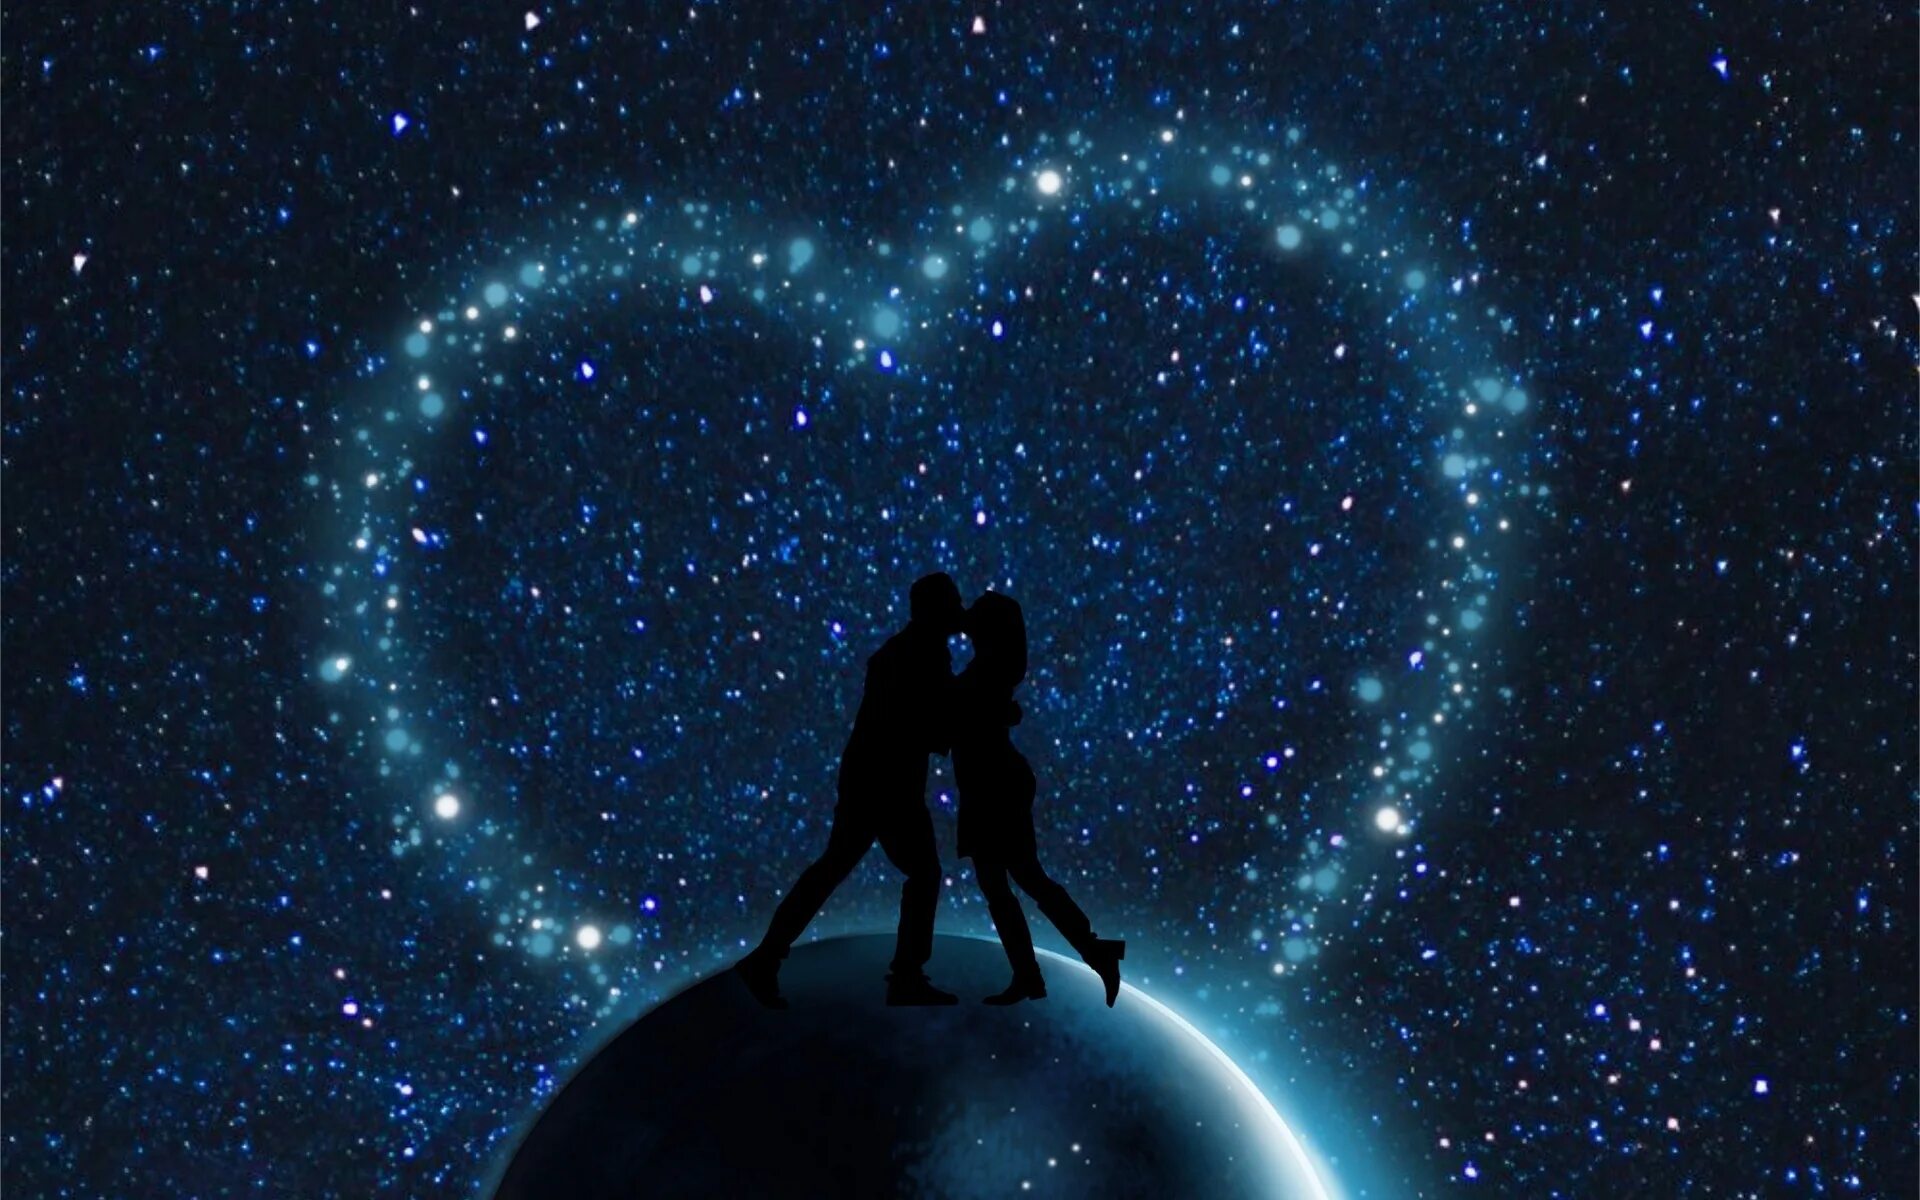 Затерявшая в звездах. Двое под звездами. Космос любовь. Пара на фоне звездного неба. Вселенная и любовь.